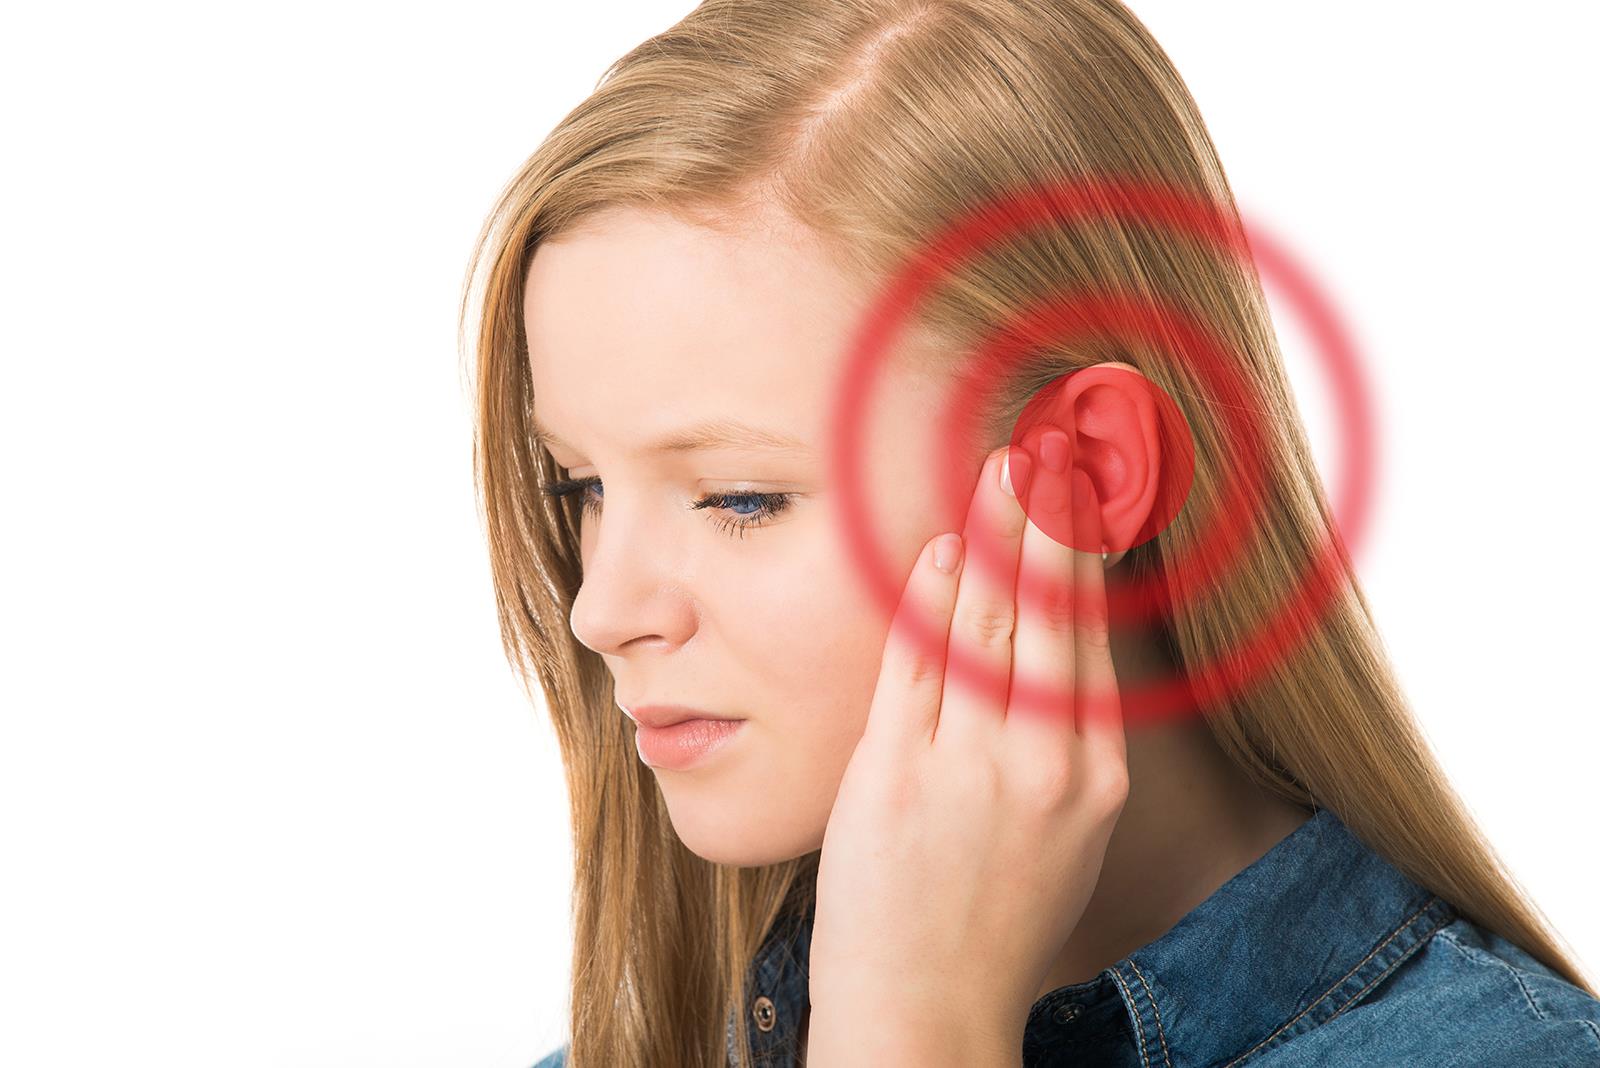 Đeo tai nghe nhiều có những ảnh hưởng tiêu cực ra sao? Sau đây là câu trả lời cho bạn - ảnh 1